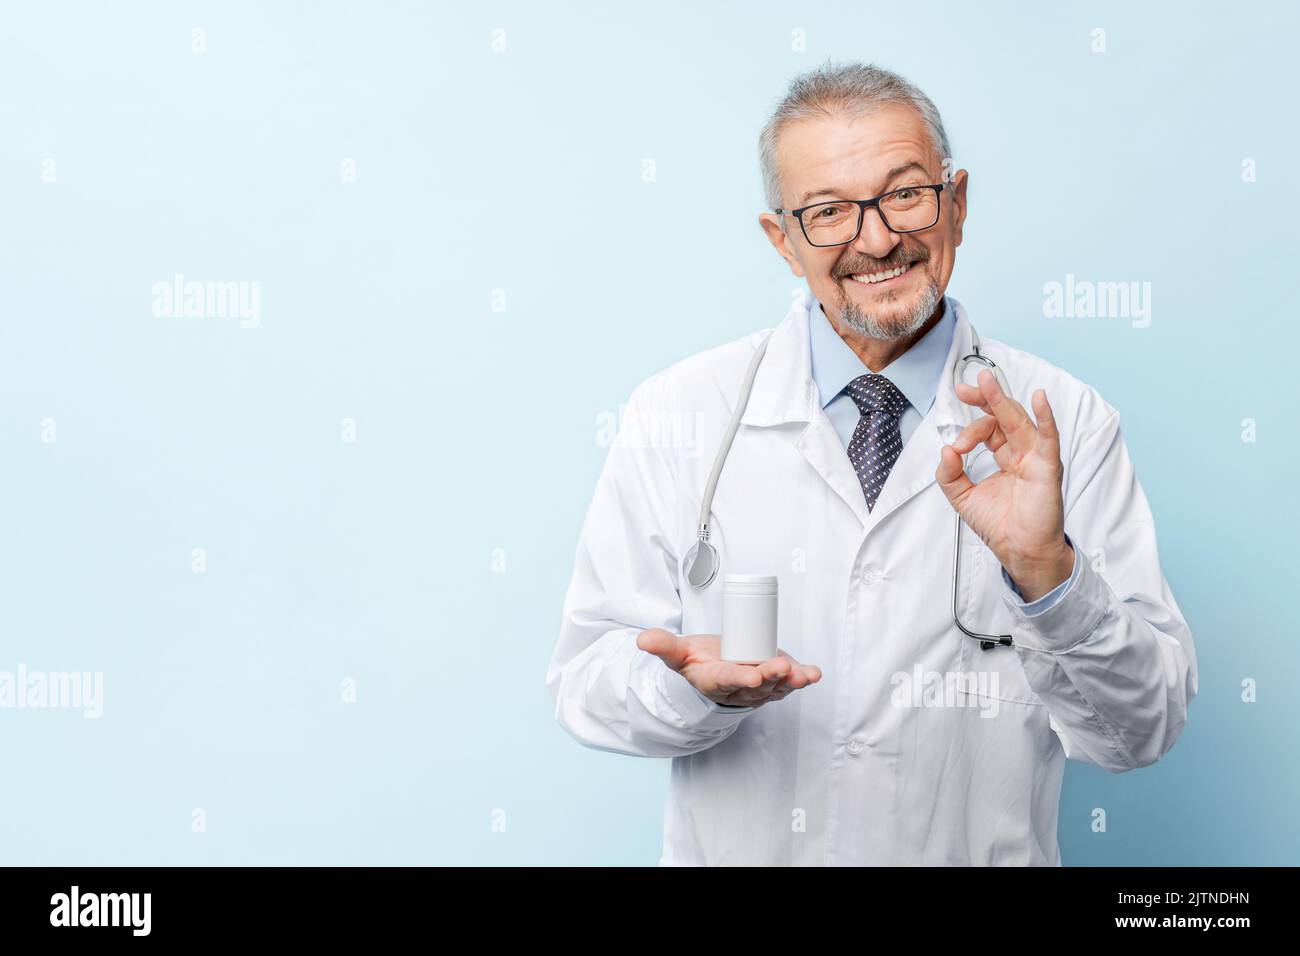 Medicina, salud y concepto de la profesión - médico anciano sonriente con estetoscopio sostiene la droga que muestra el pulgar para arriba en el hospital. Foto de stock